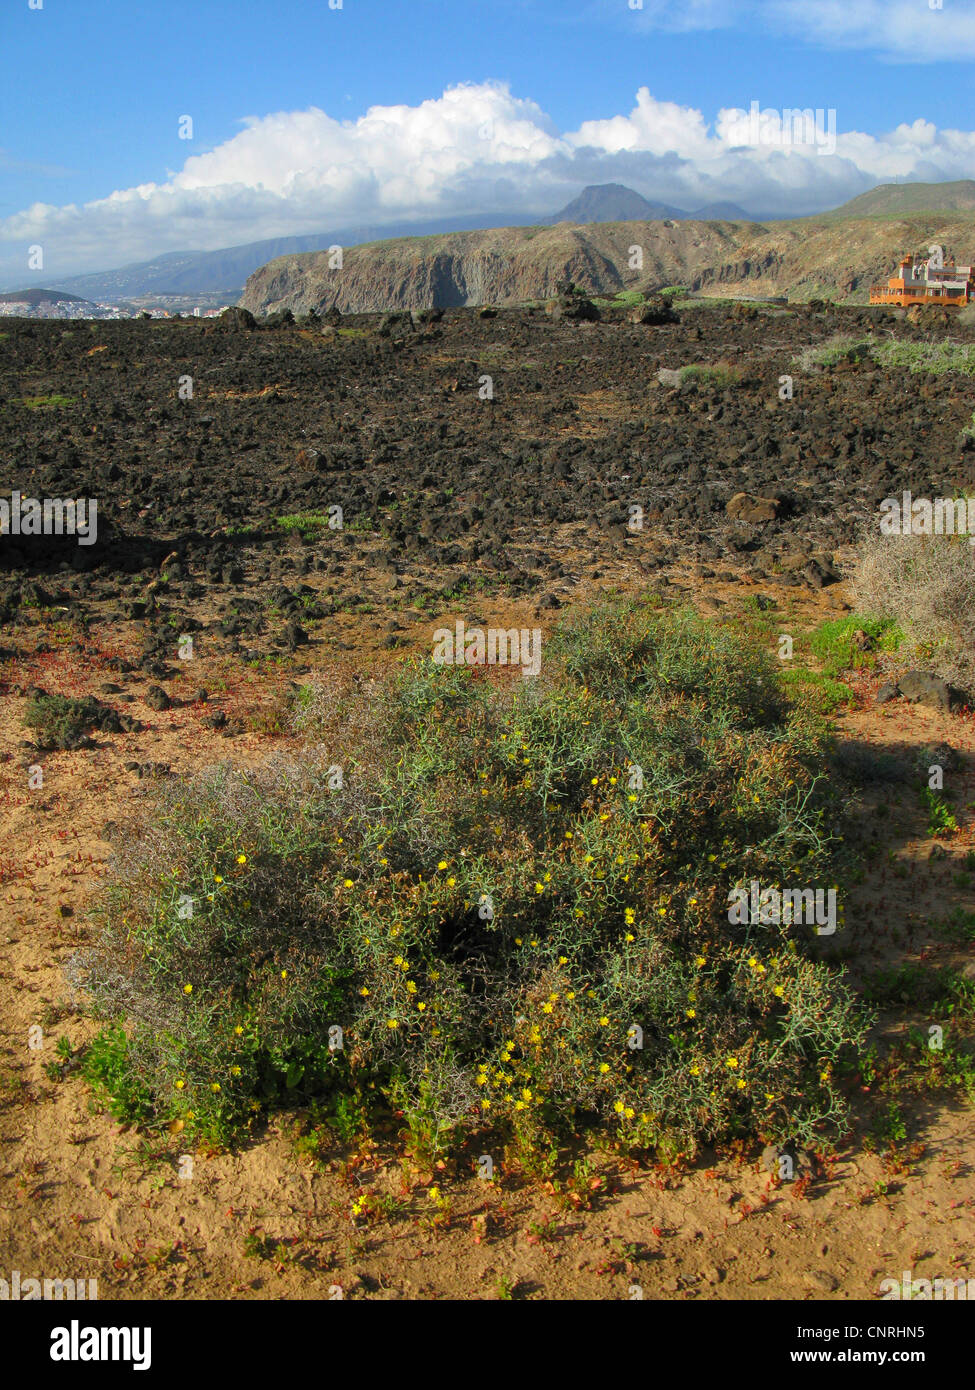 Launaea (Launaea arborescens), flowering shrub in volcanic landscape, Canary Islands, Tenerife Stock Photo